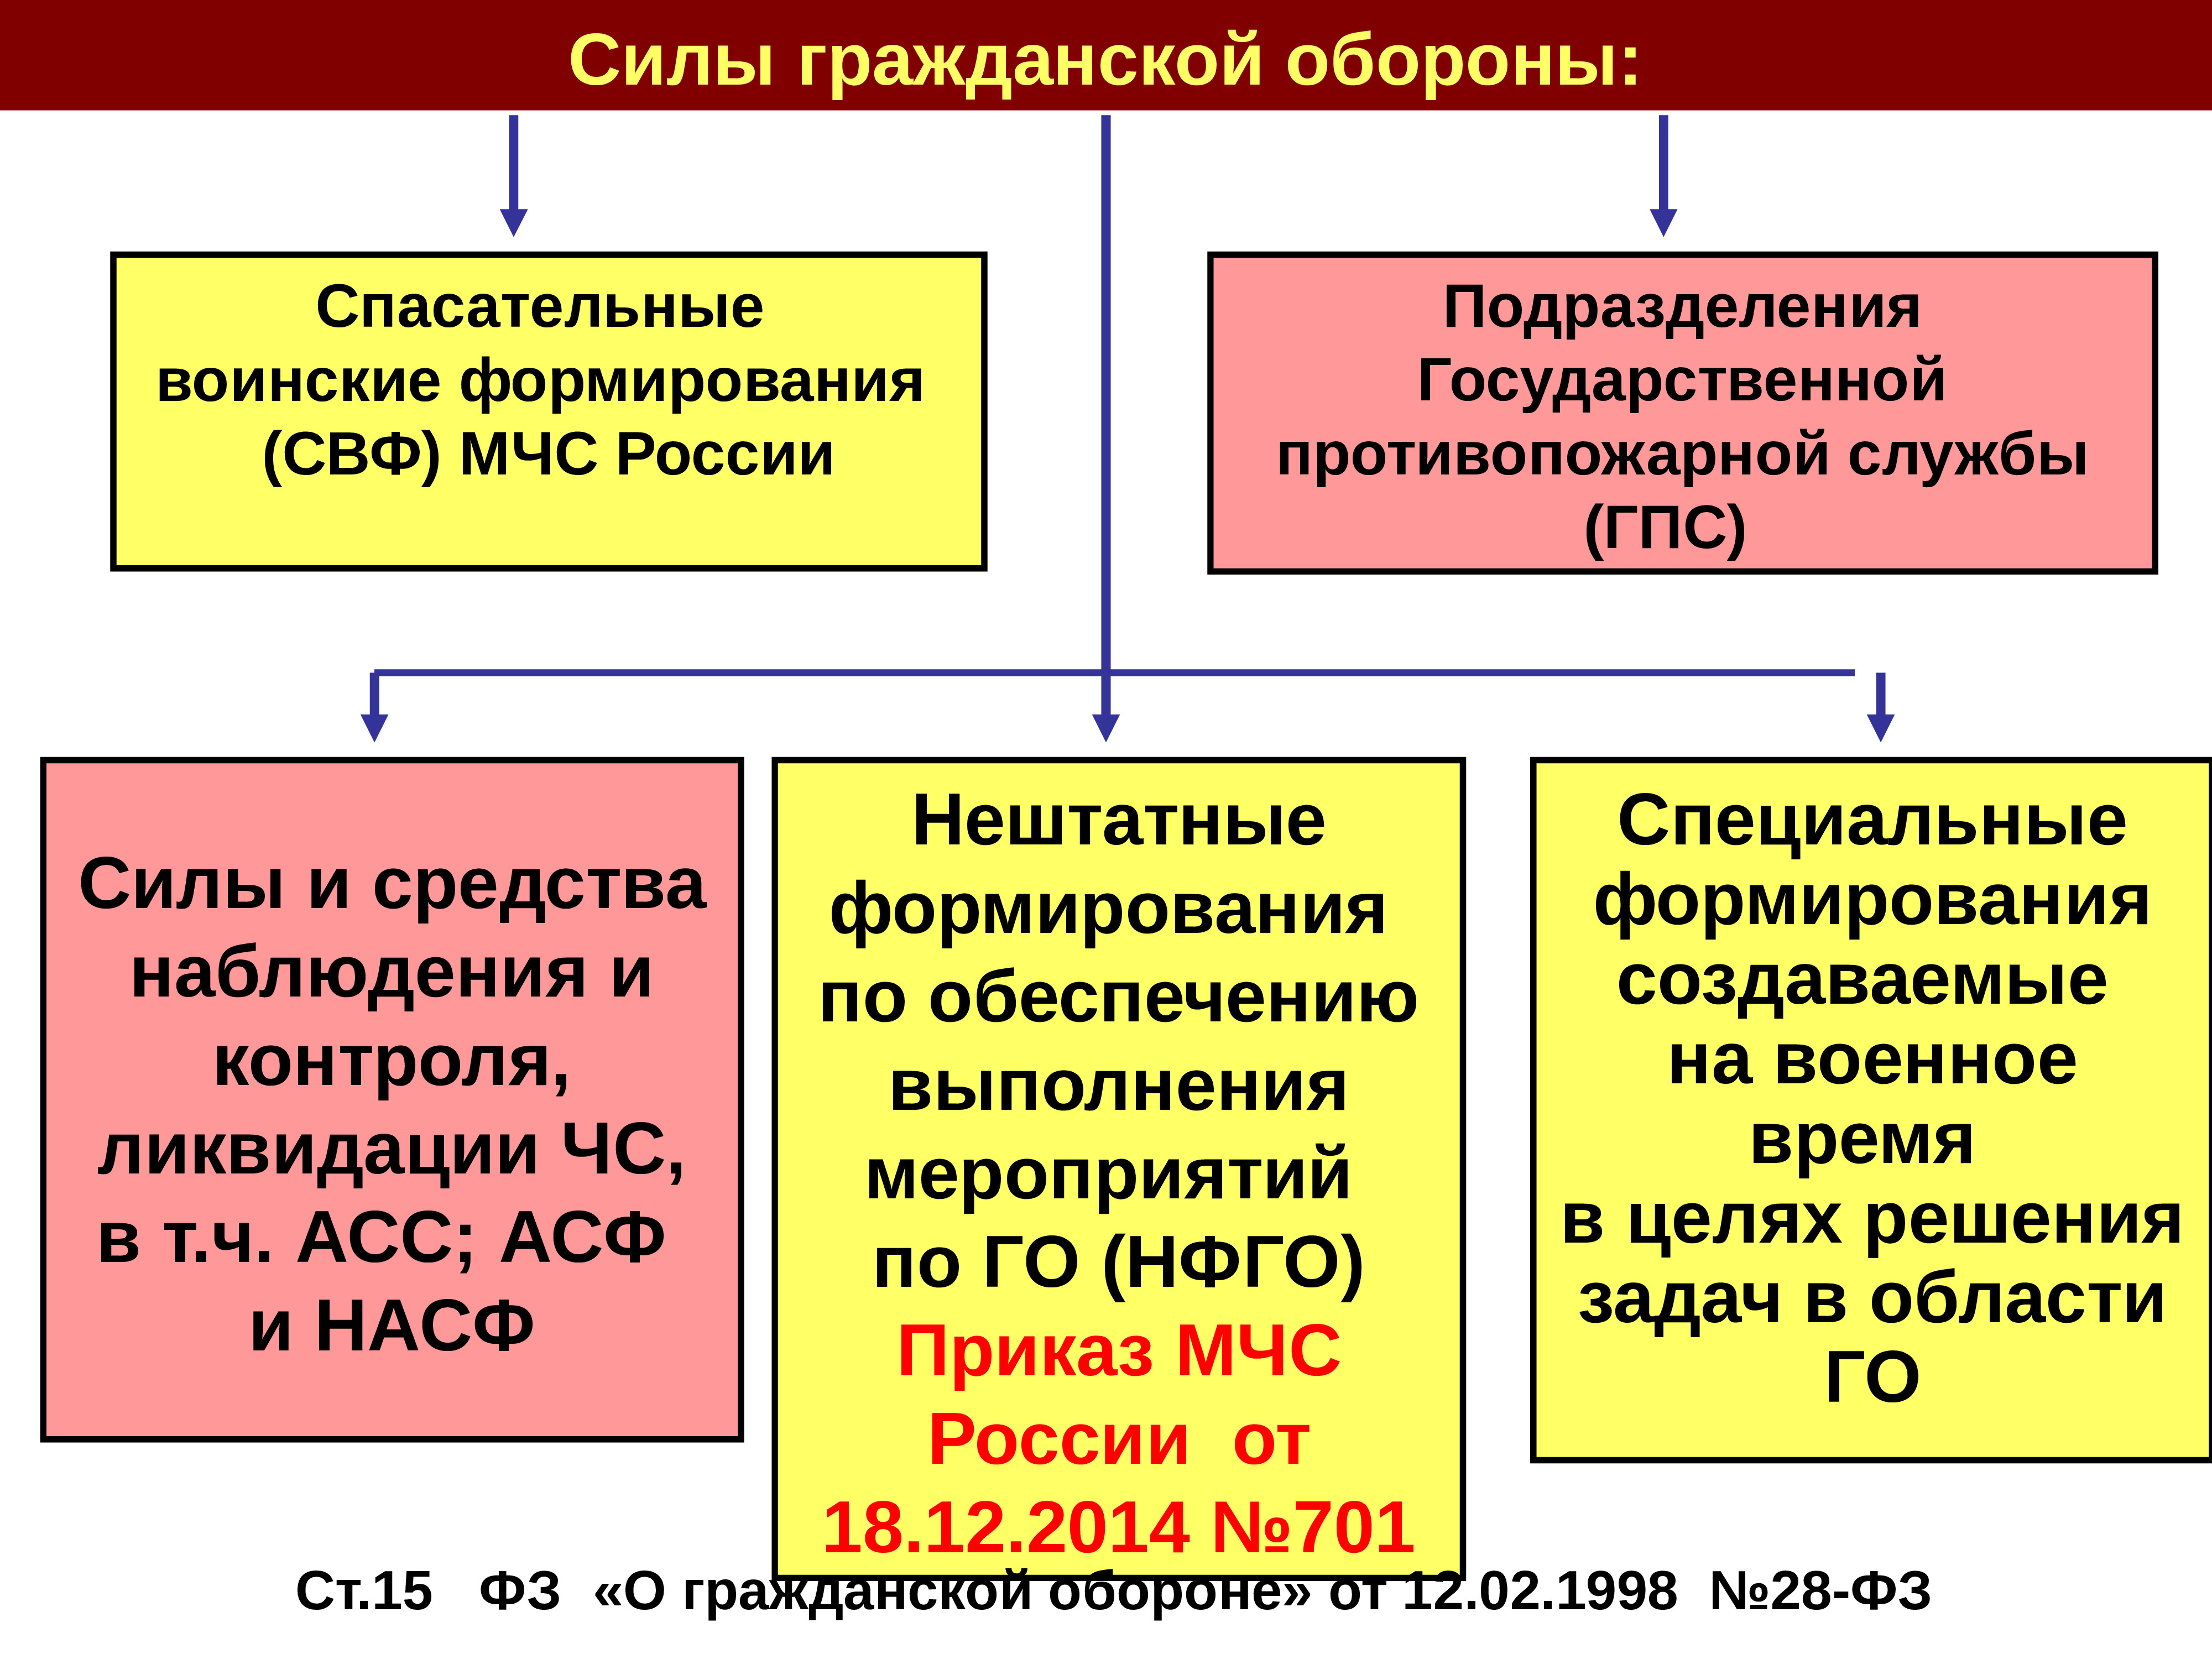 Состав сил гражданской обороны Российской Федерации